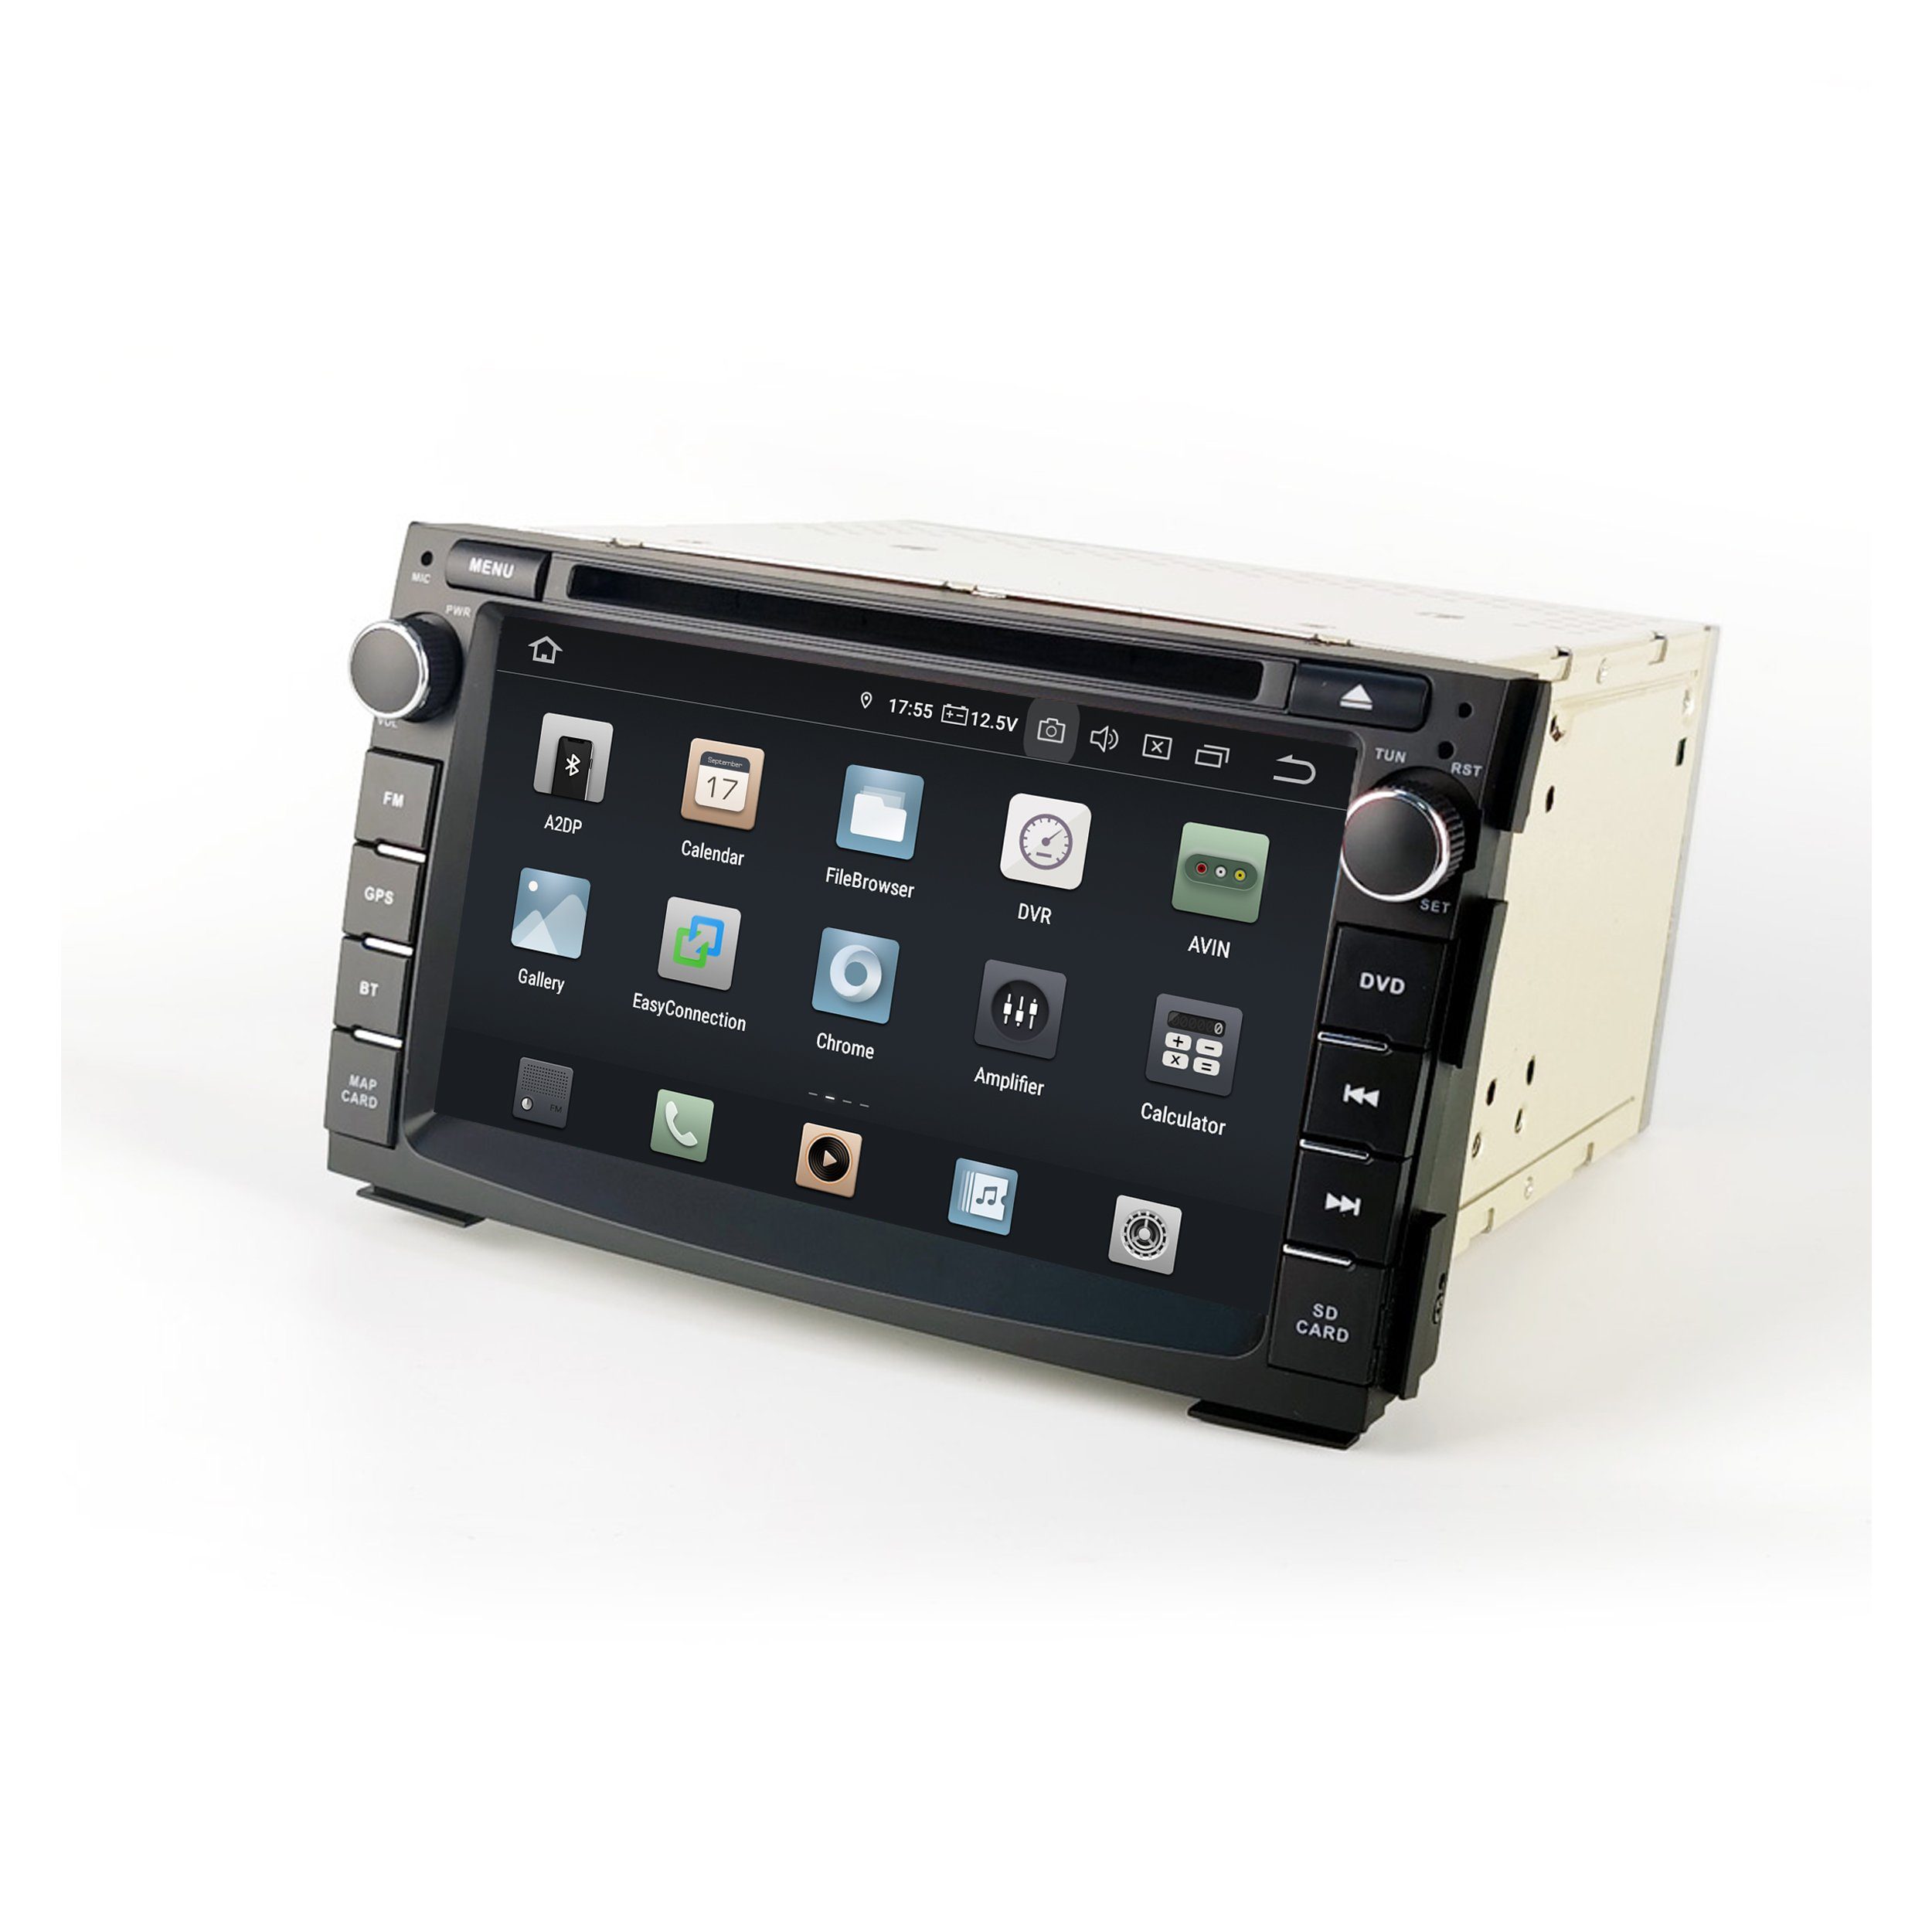 TAFFIO Für Touch DVD AndroidAuto CarPlay Venga Android Cee'd GPS 7" Kia Radio Einbau-Navigationsgerät